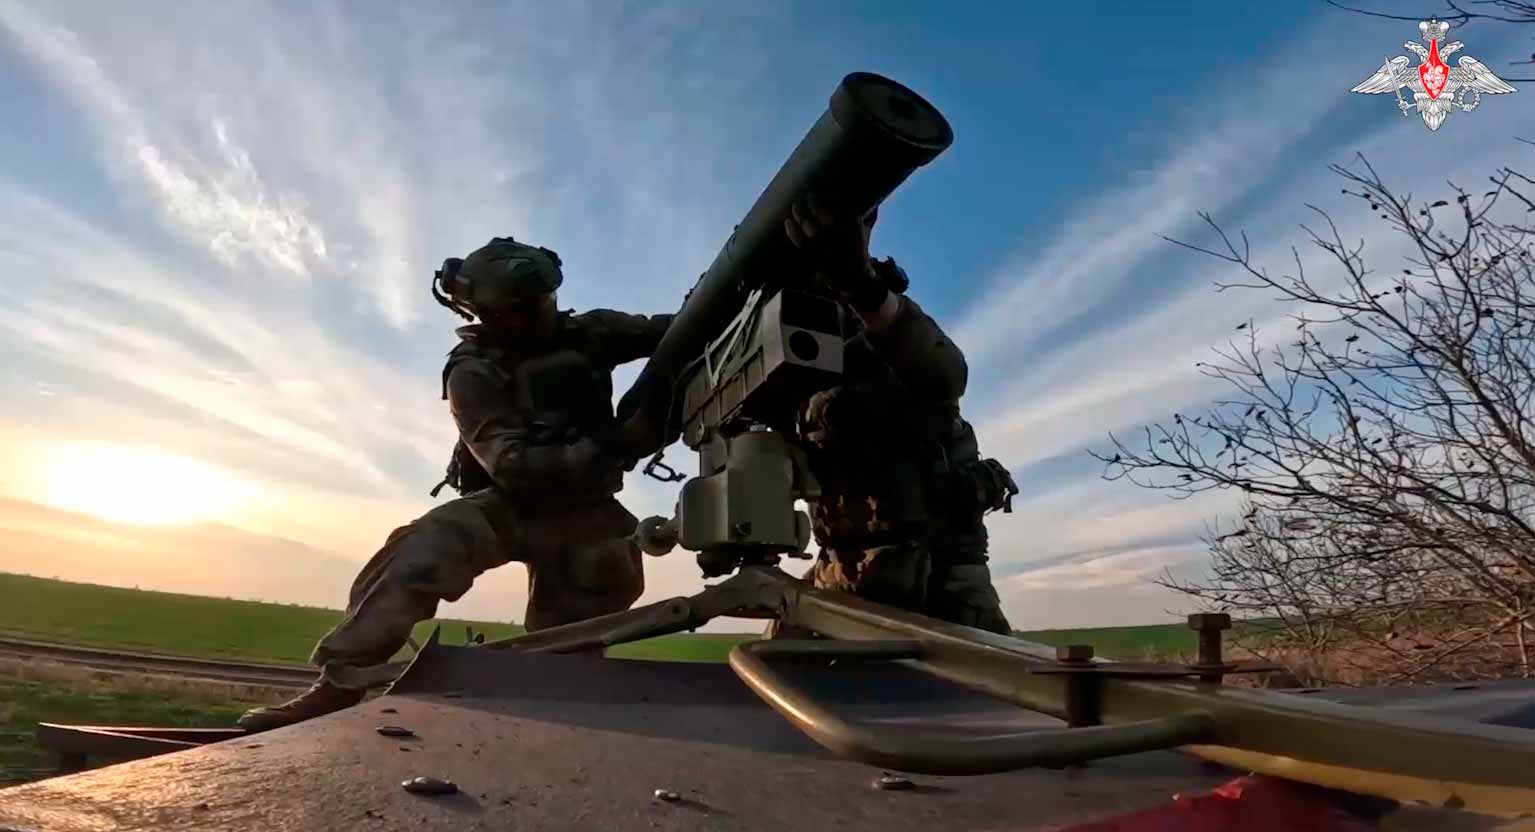 रूस ने मैड-मैक्स शैली की बग्गी का वीडियो प्रकाशित किया, जो यूक्रेन के टैंकों पर एंटी-टैंक मिसाइल दाग रही है। स्रोत और वीडियो: टेलीग्राम t.me/mod_russia 